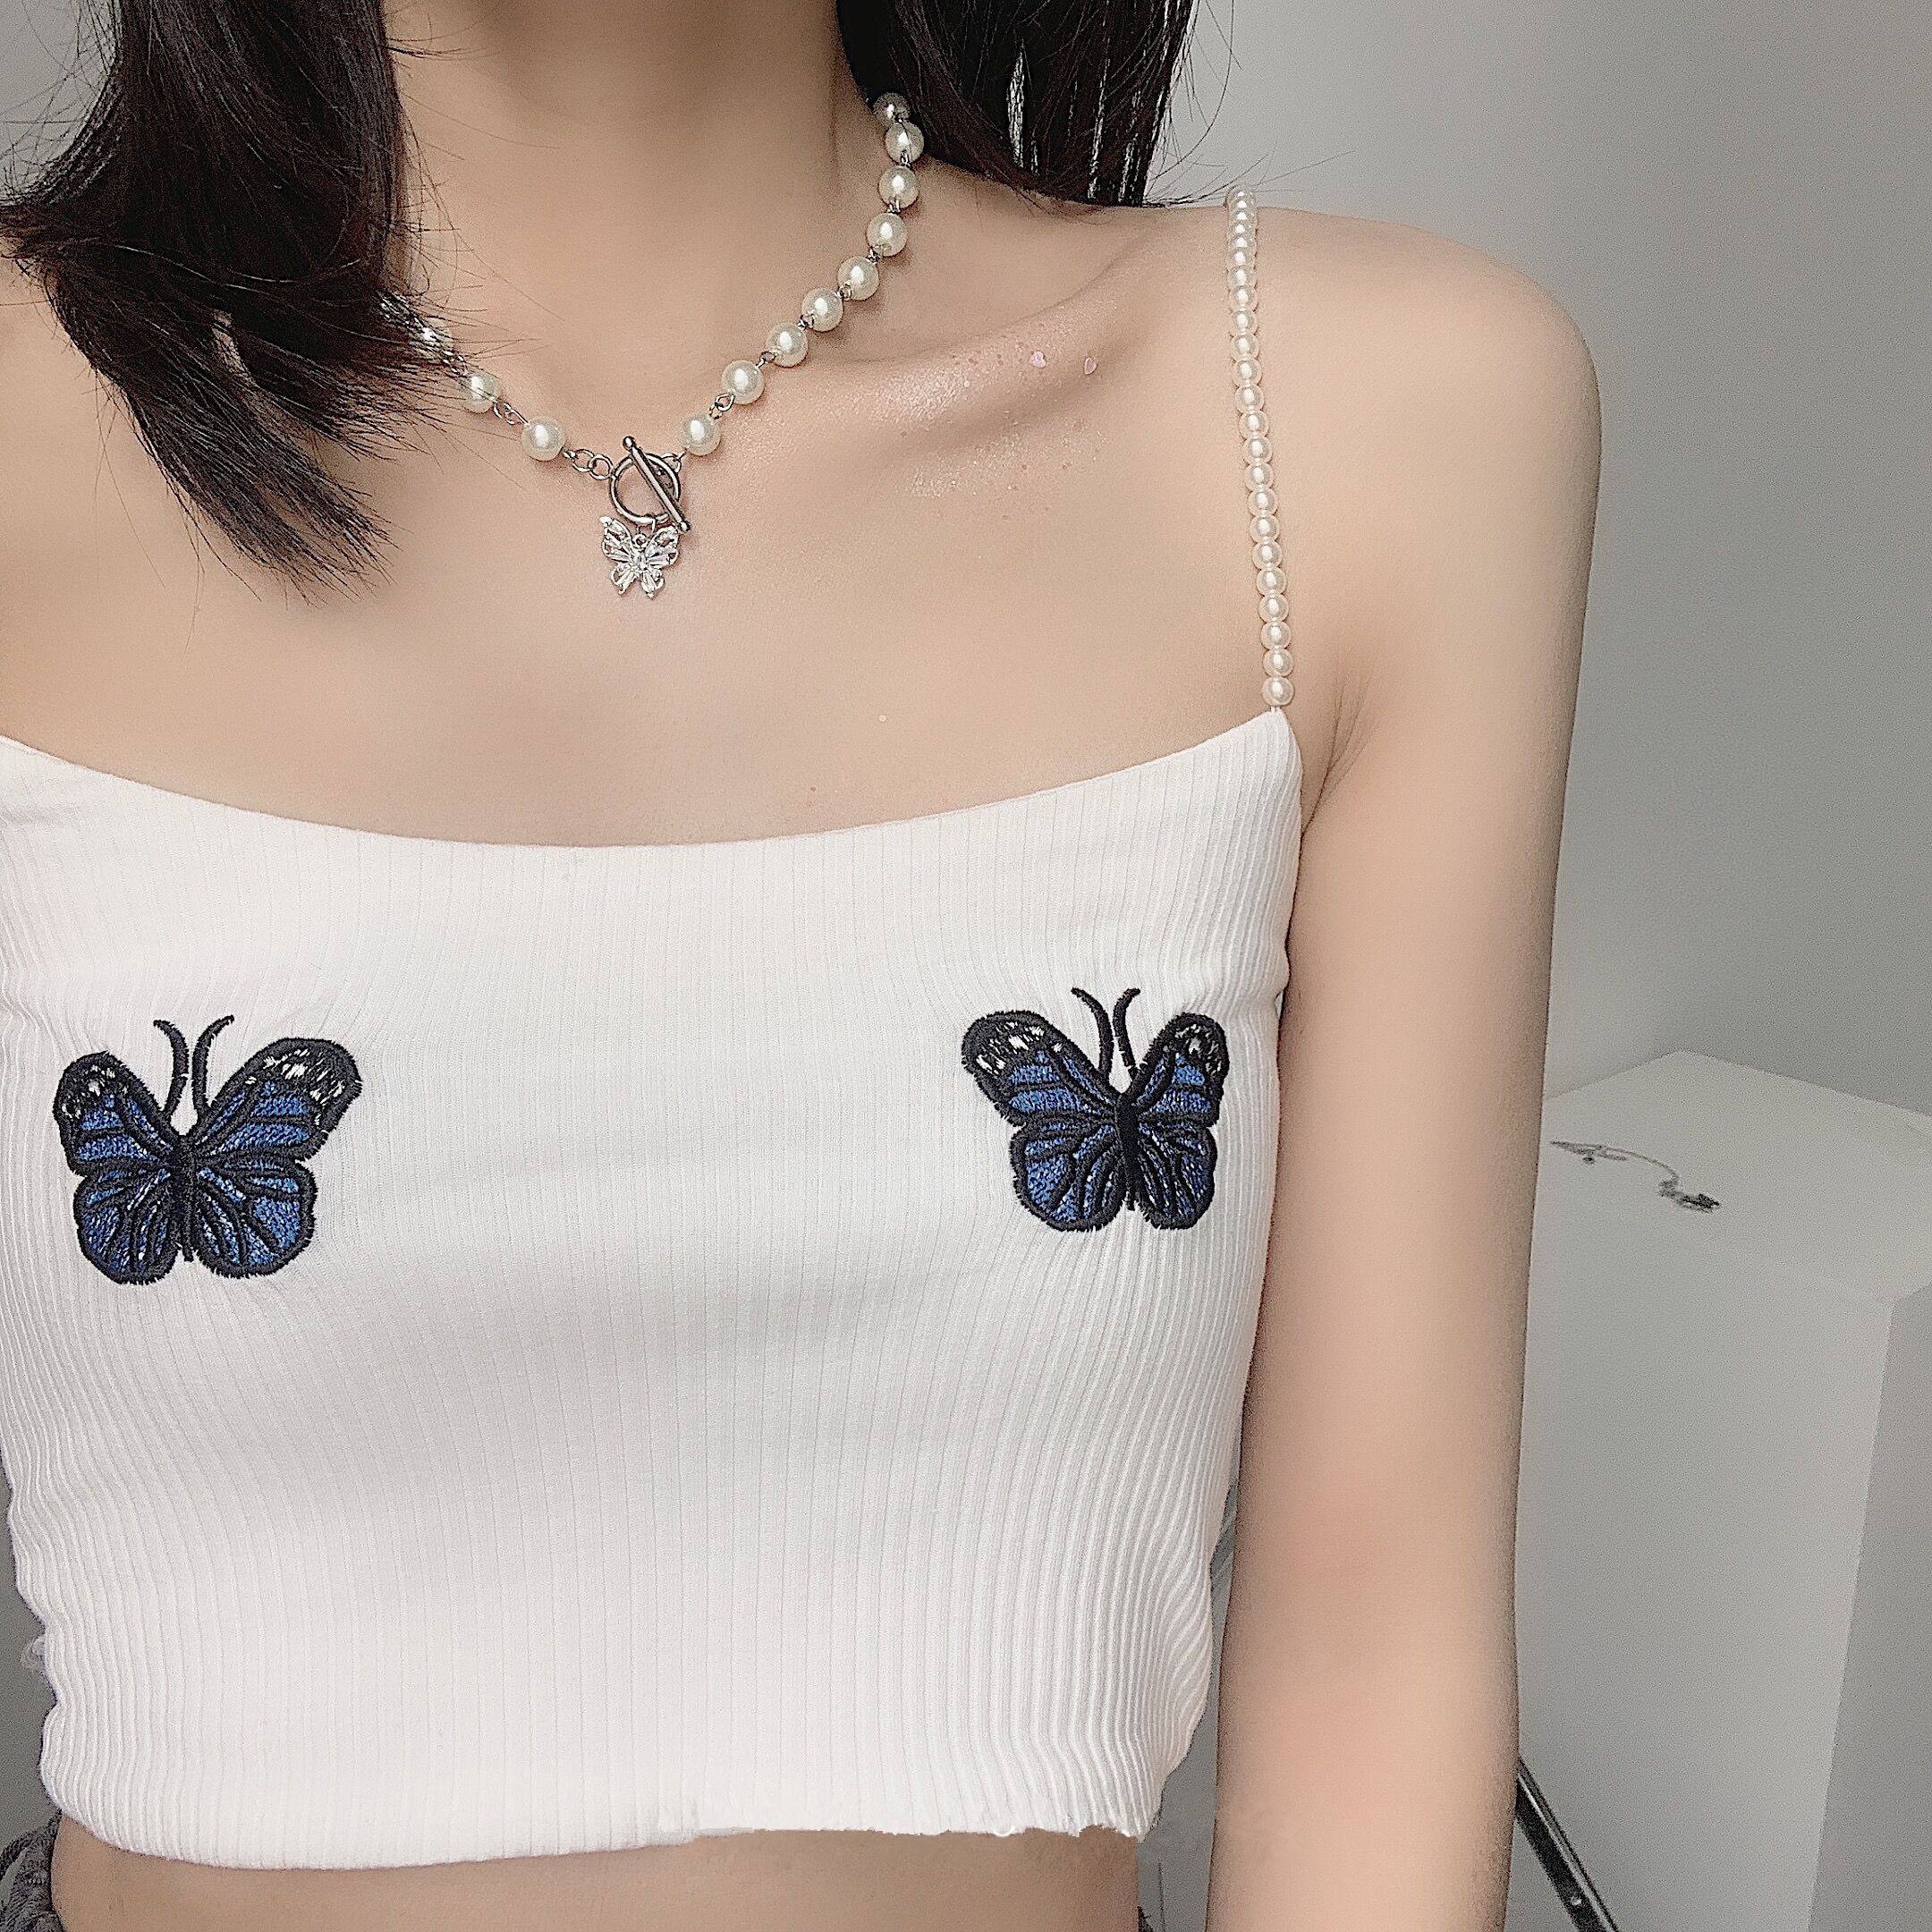 Huanzhi vintage udsøgt perle rhinestones choker sommerfugl titanium stål halskæde til kvinder piger fest smykker